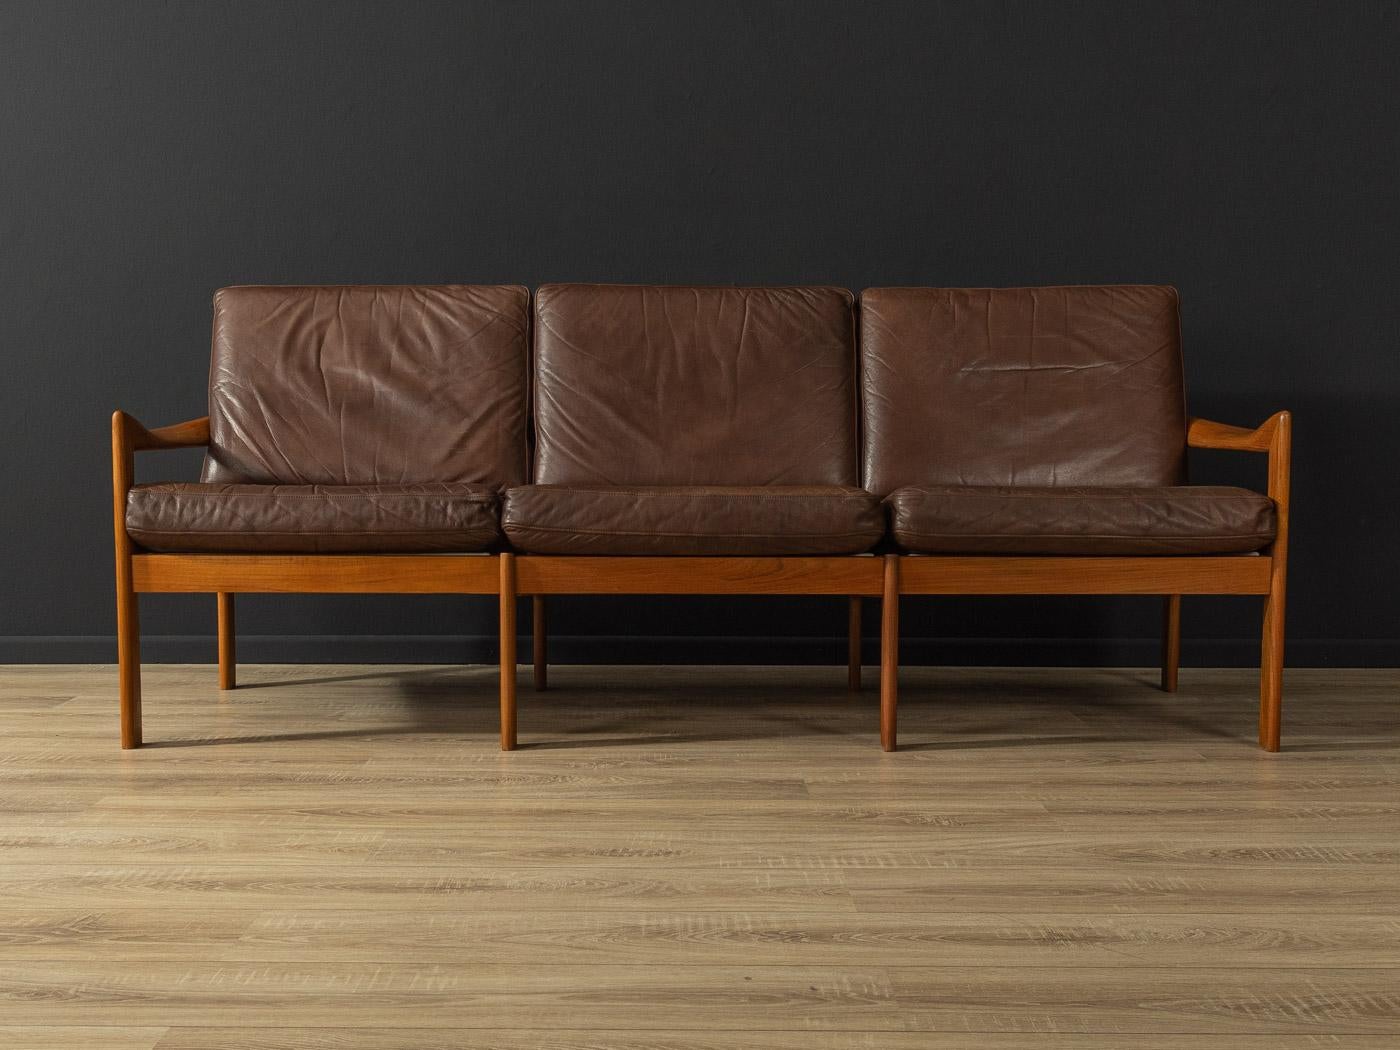 Danish Sofa from the 1960s Designed by Illum Wikkelsø, Made in Denmark For Sale